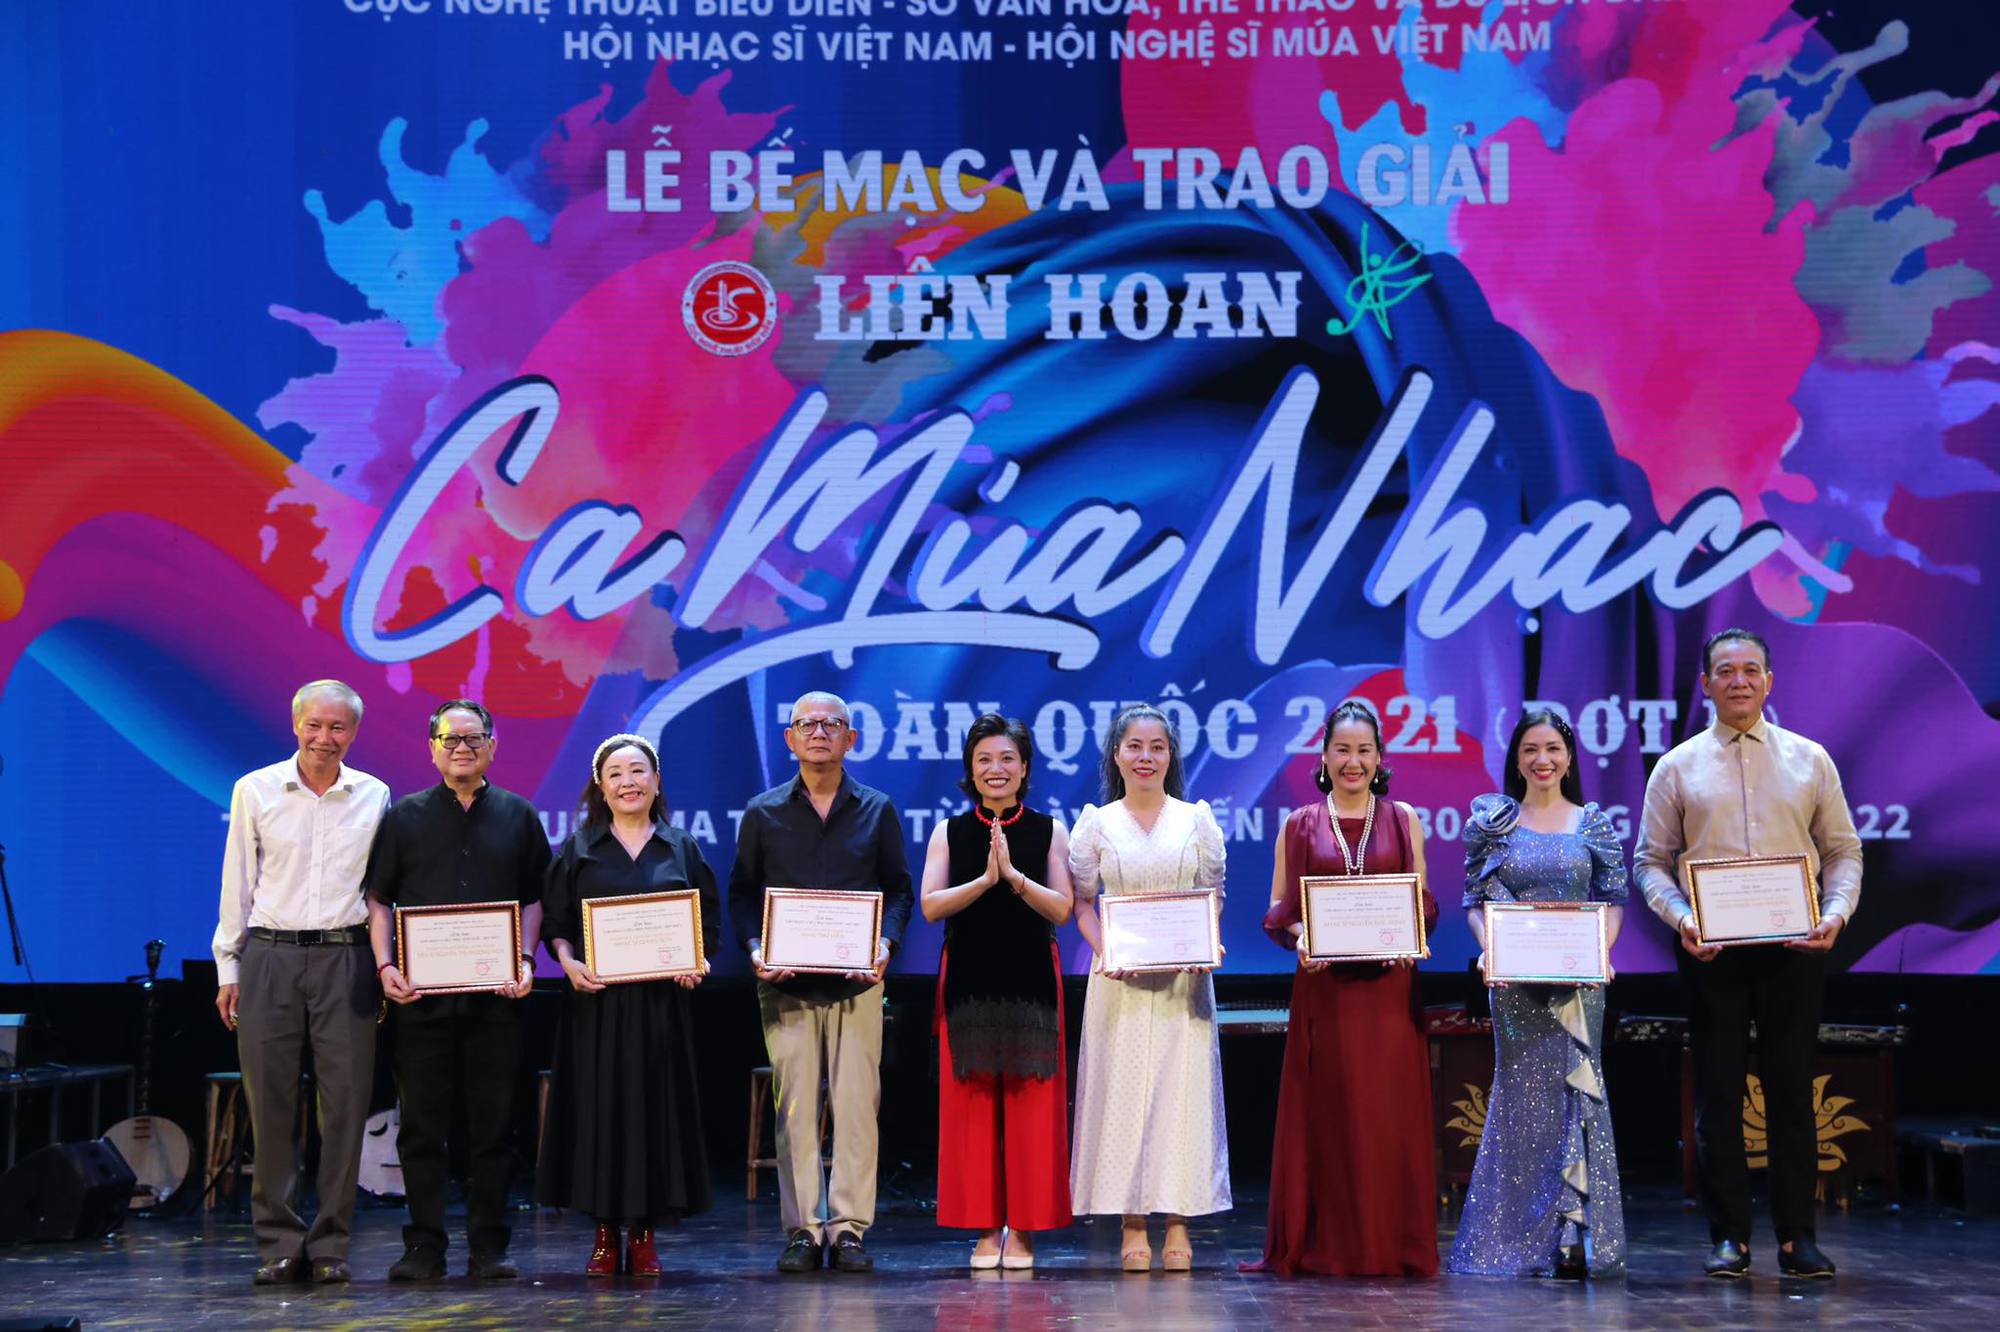 3 nhà hát được giải xuất sắc tại Liên hoan Ca Múa Nhạc toàn quốc - 2021 (Đợt 2) - Ảnh 4.